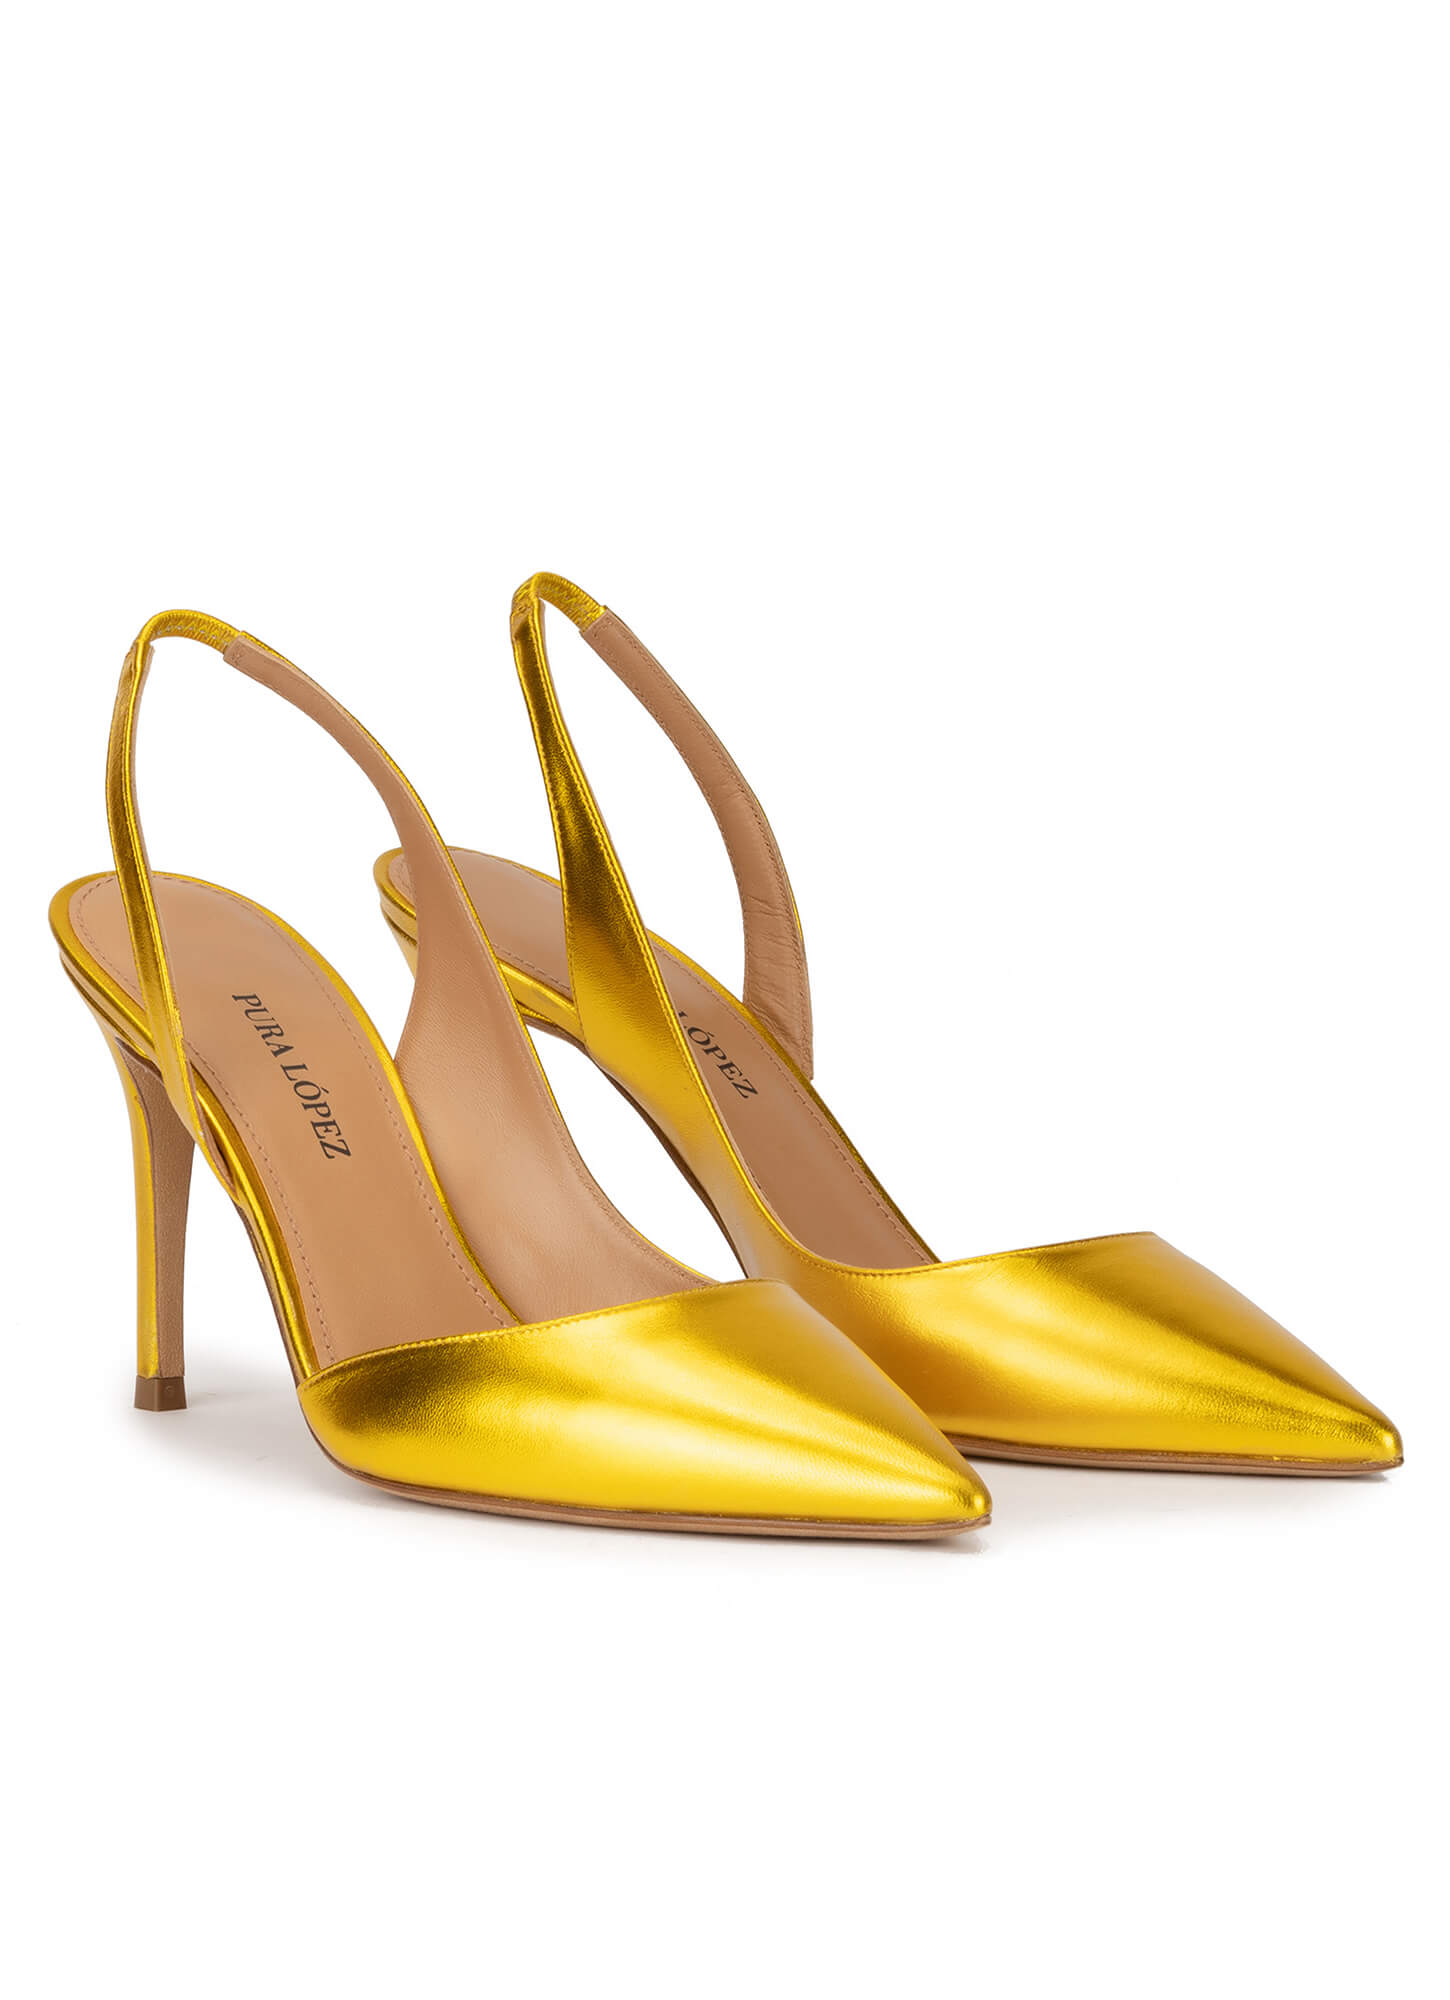 Zapatos amarillos de tacón alto y punta fina en piel metal . PURA